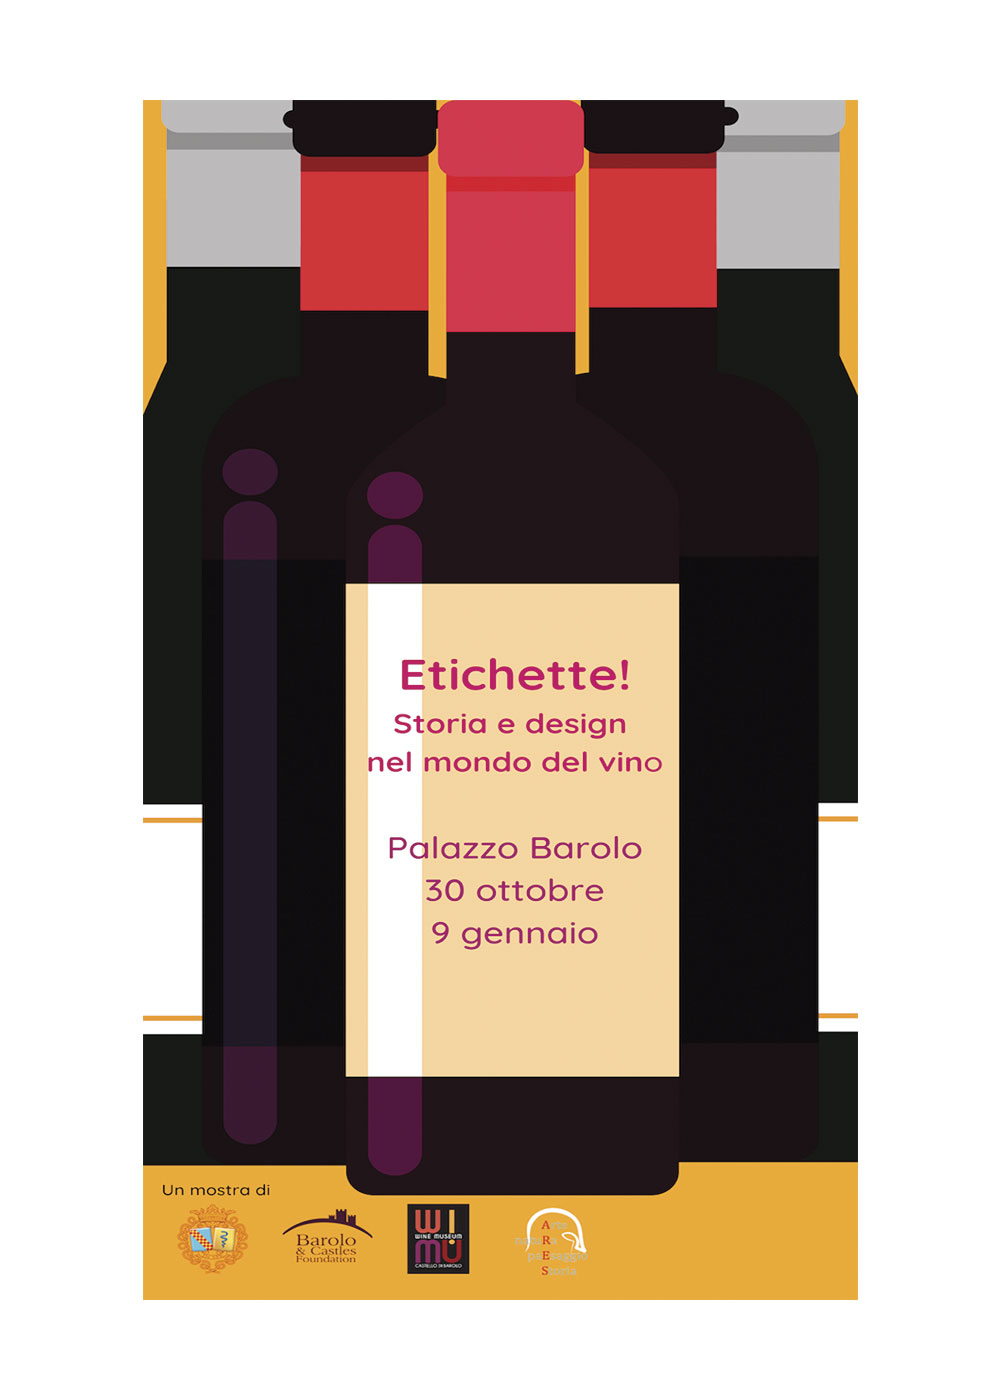 Etichette! Storia e design nel mondo del vino